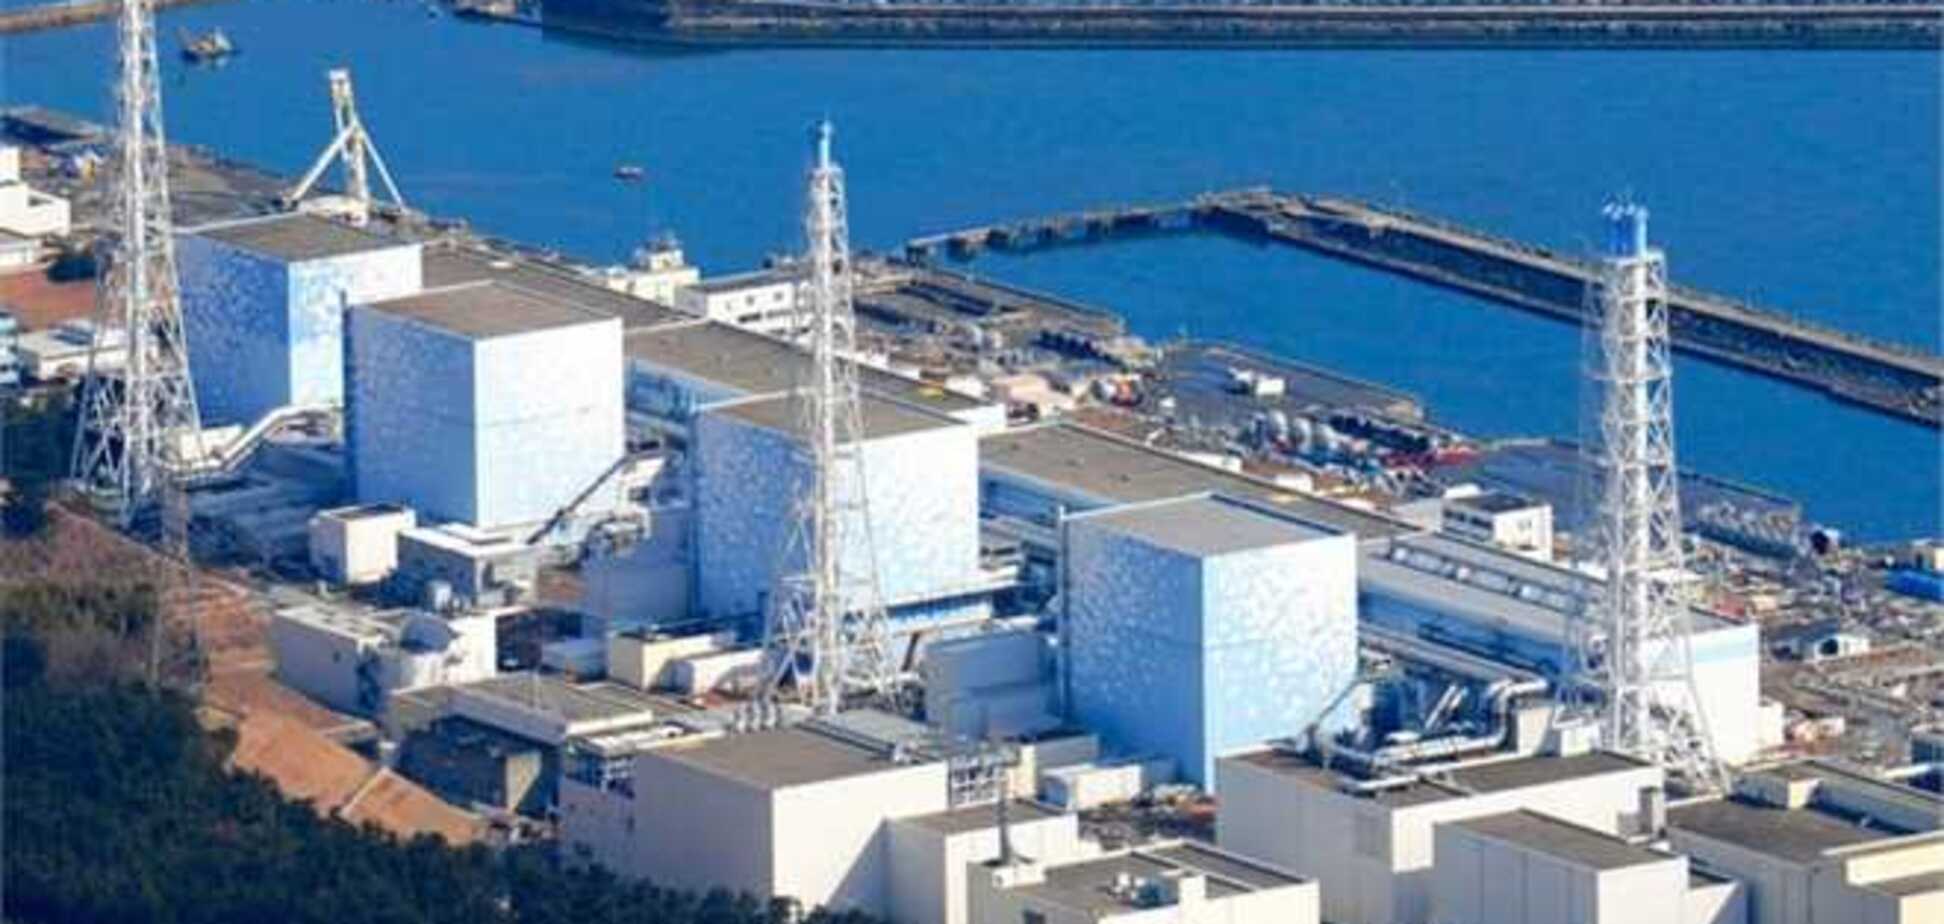 Над японской «Фукусимой» опять появился водяной пар